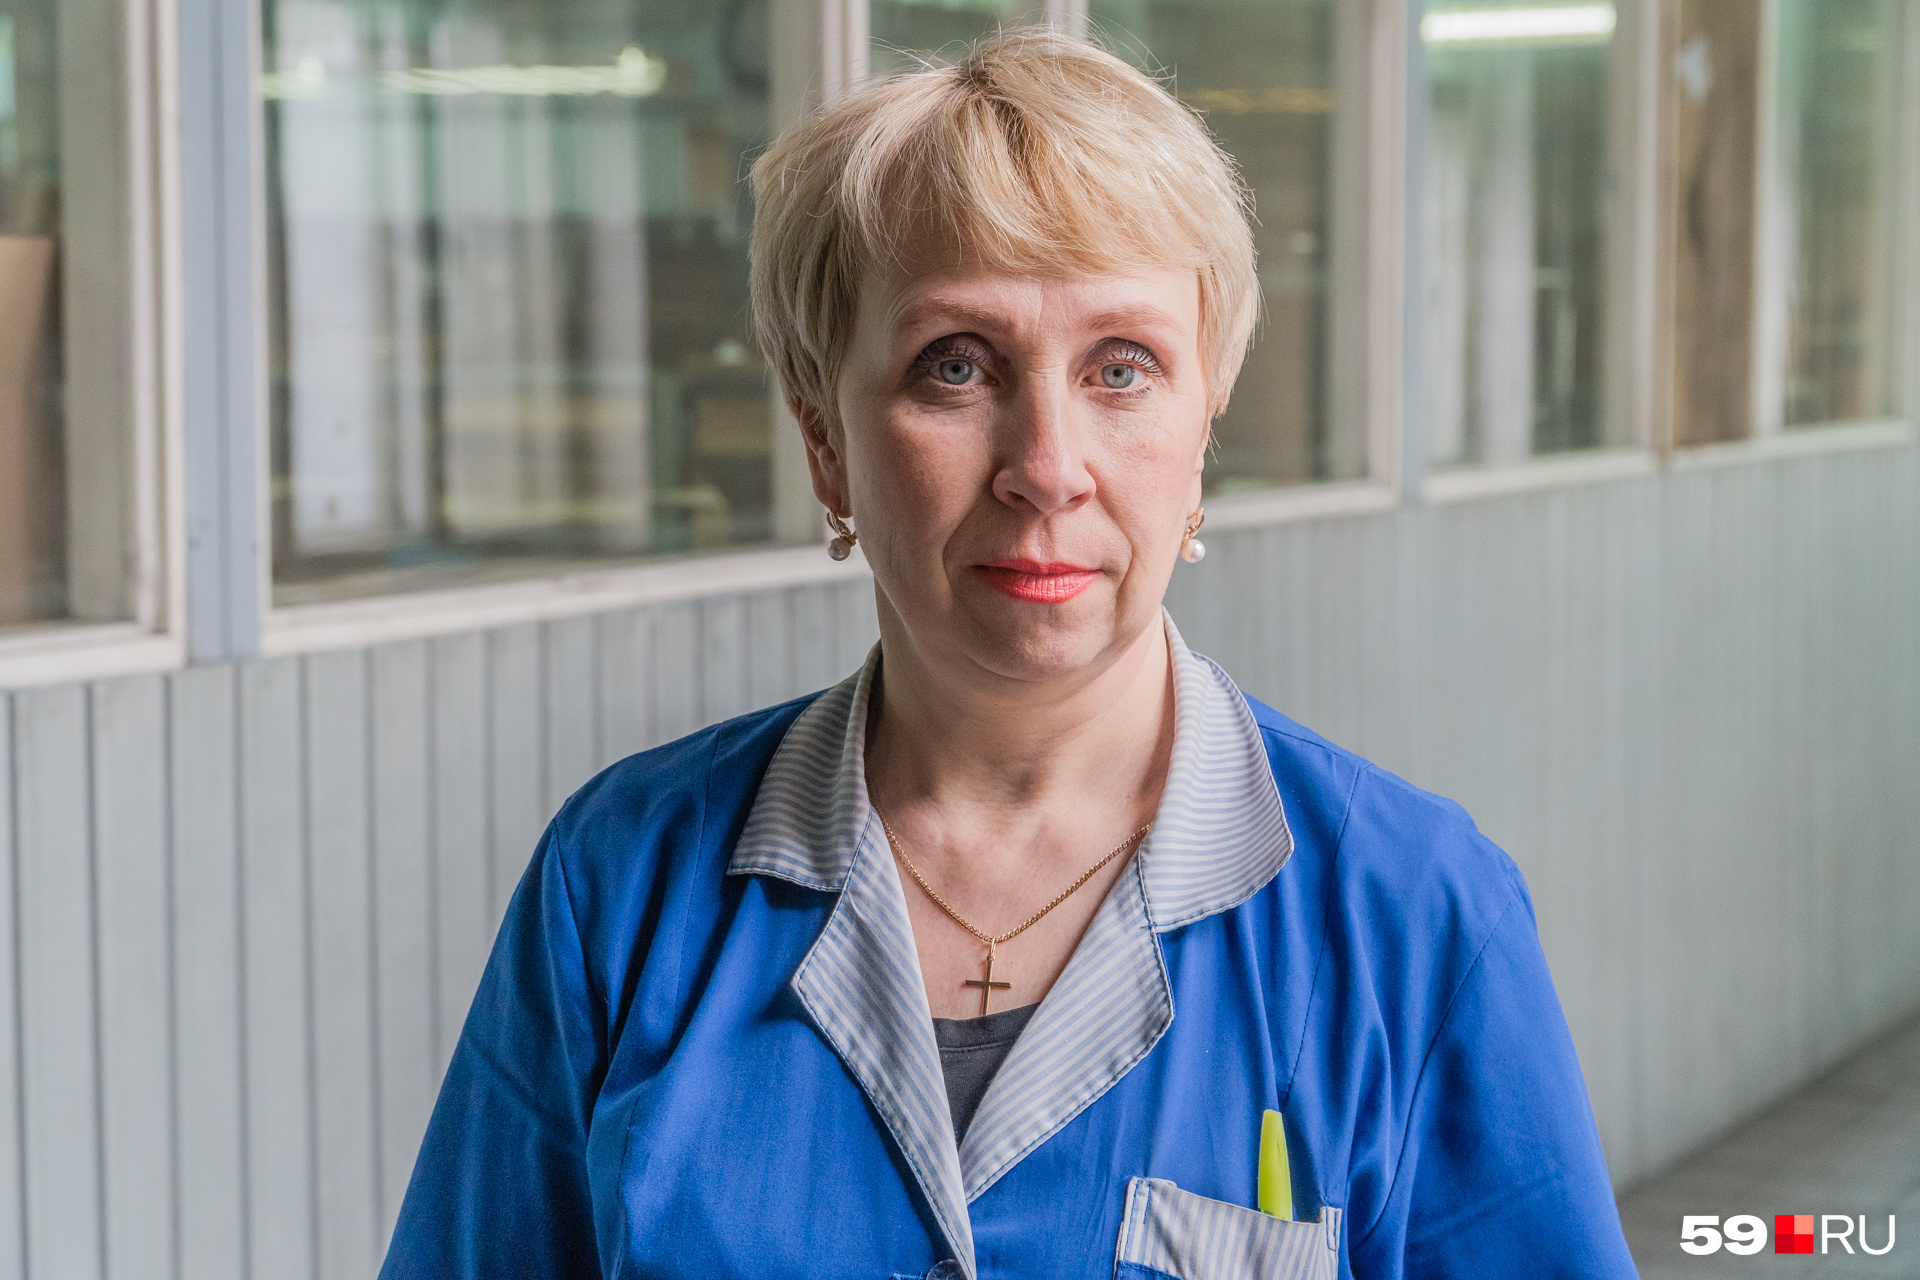 Ольга Решетняк — сотрудник с солидным стажем работы